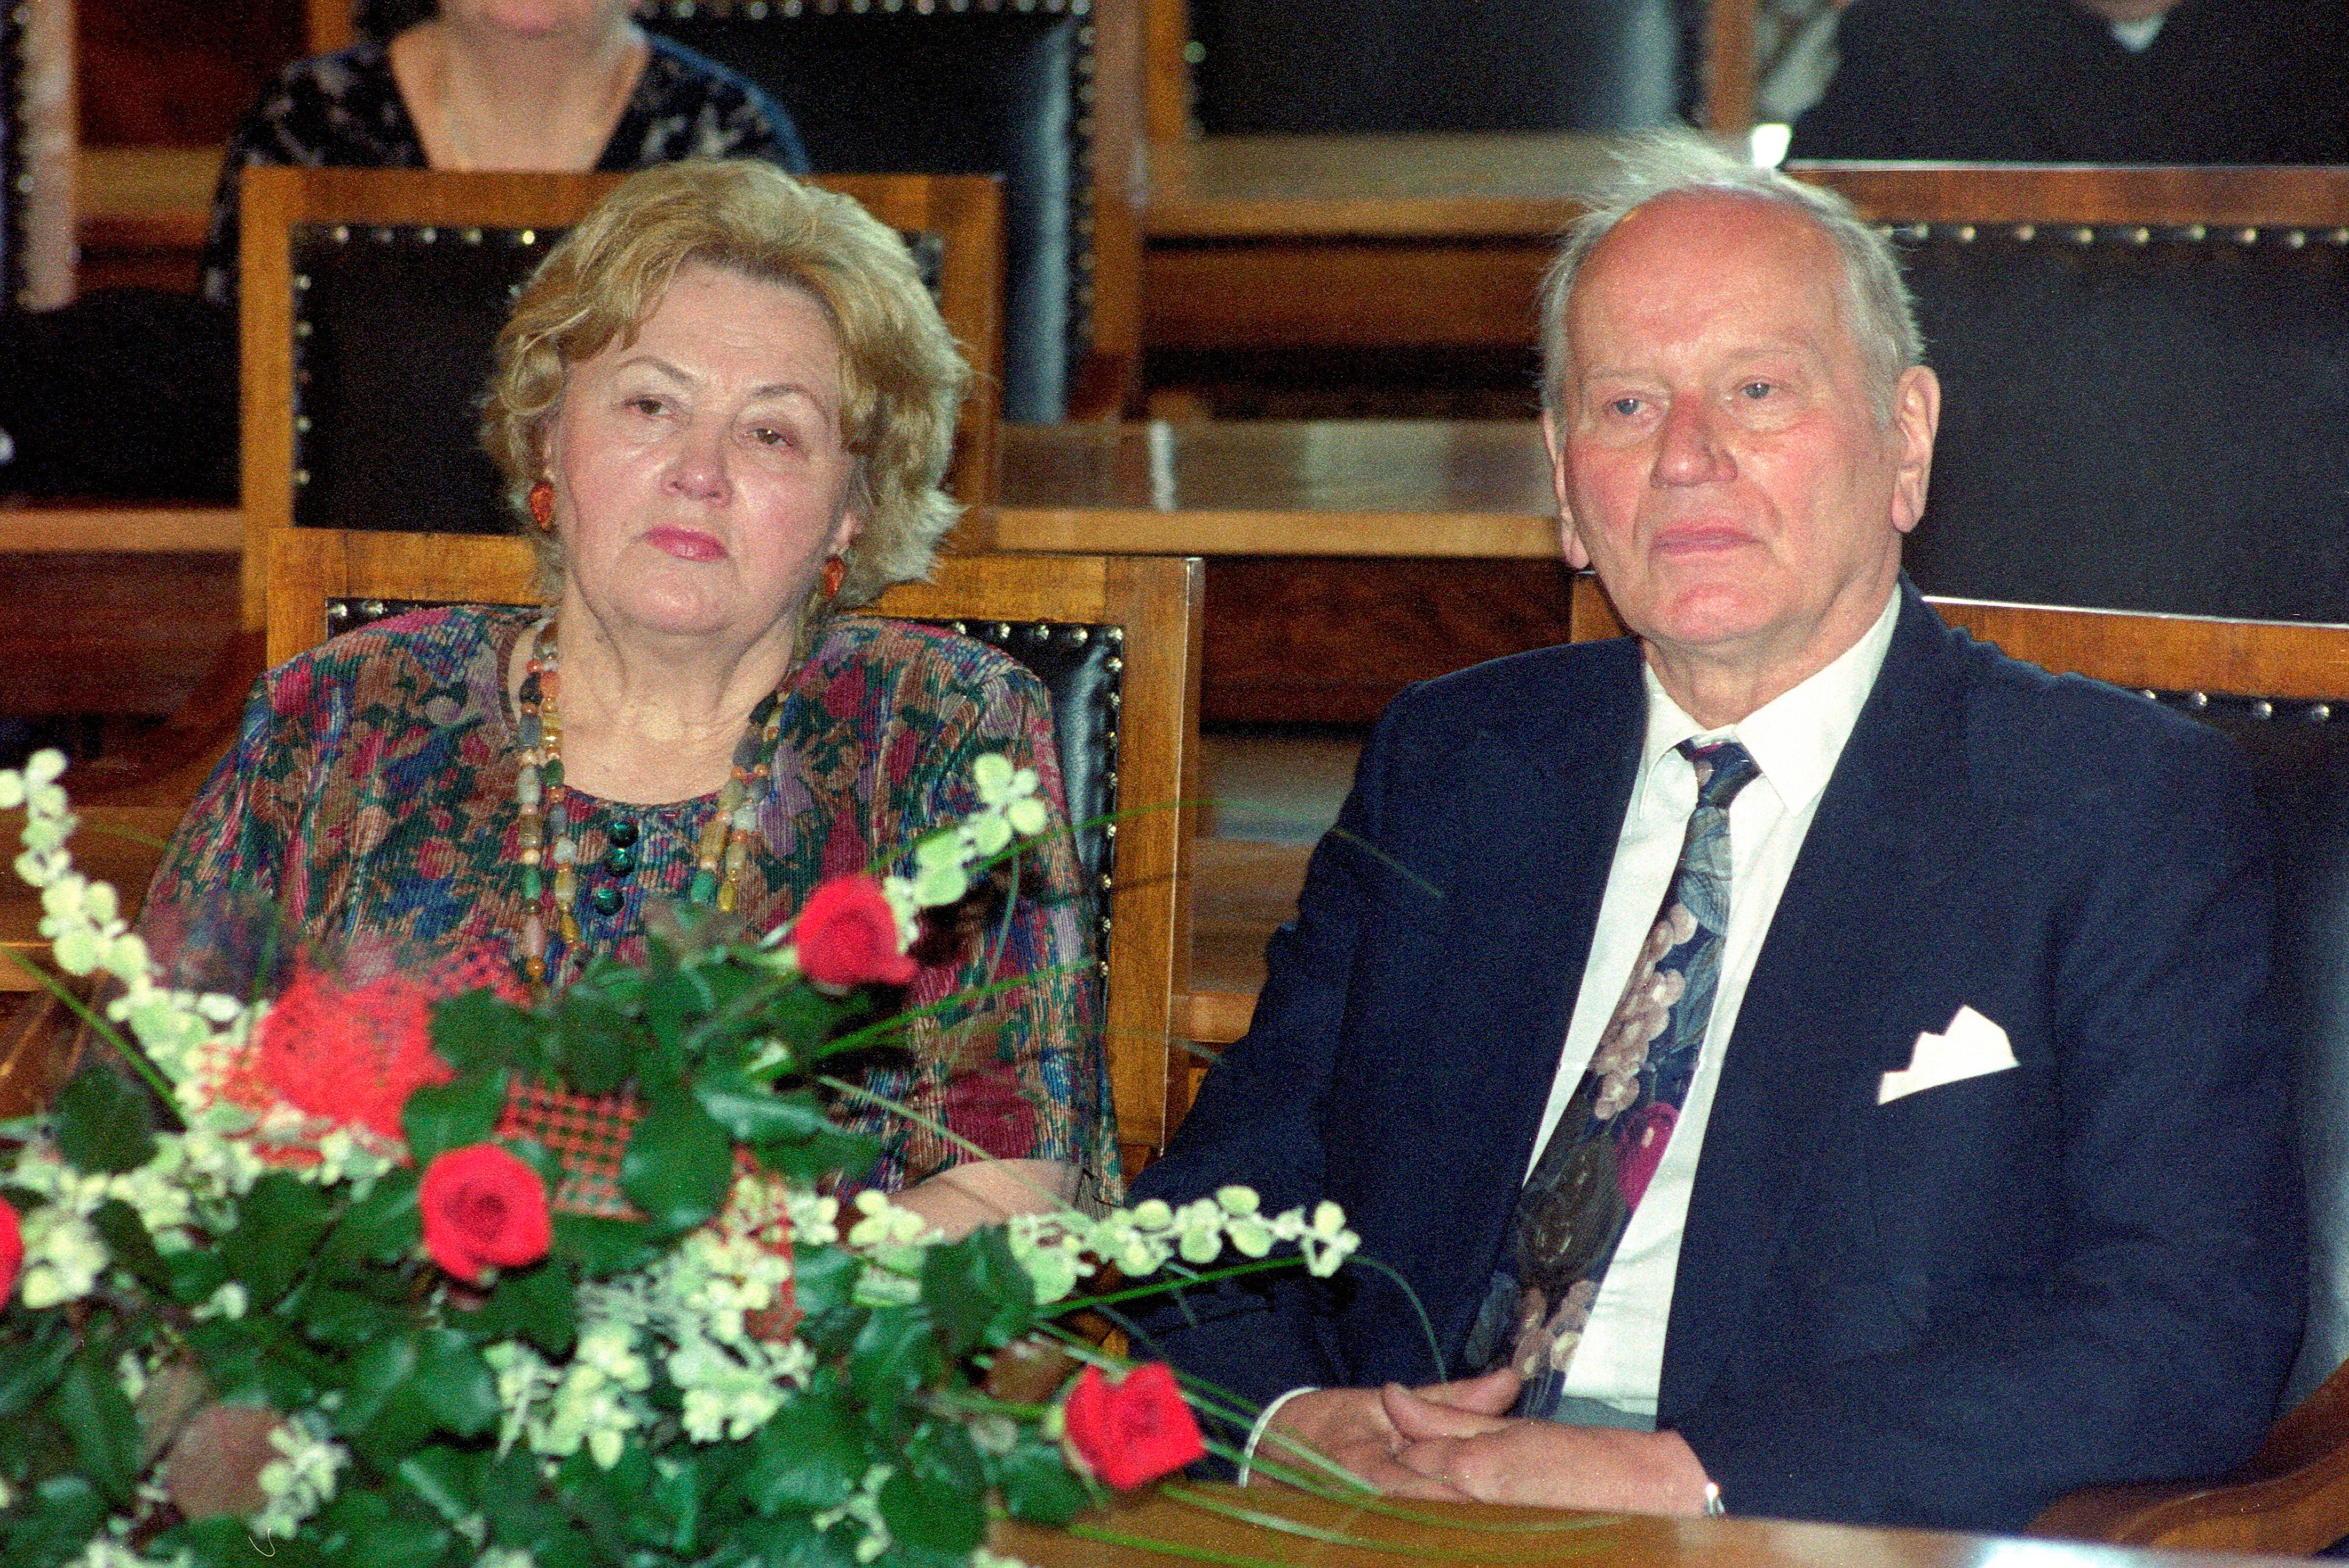 Zofia Żelazny i Zdzisław Żelazny (Zdzisław Żelazny pośmiertnie)
